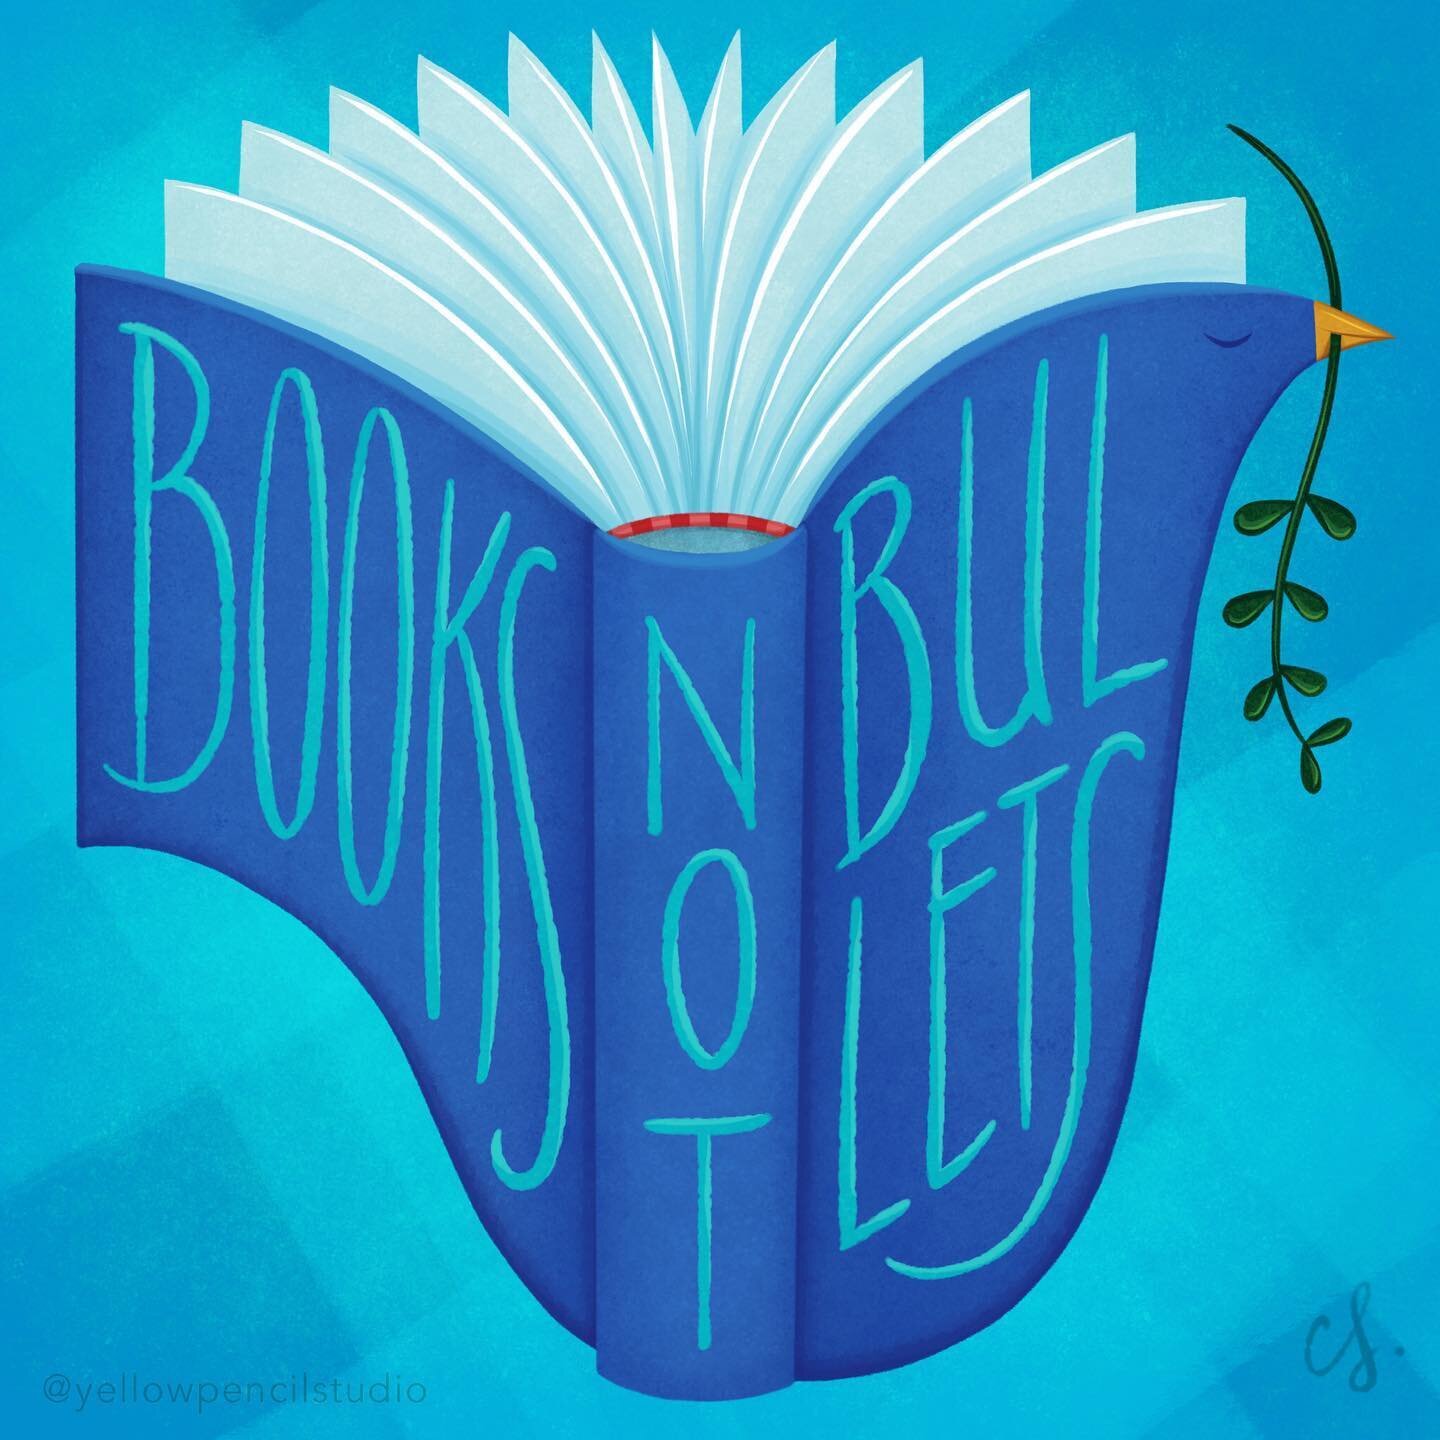 #booksnotbullets